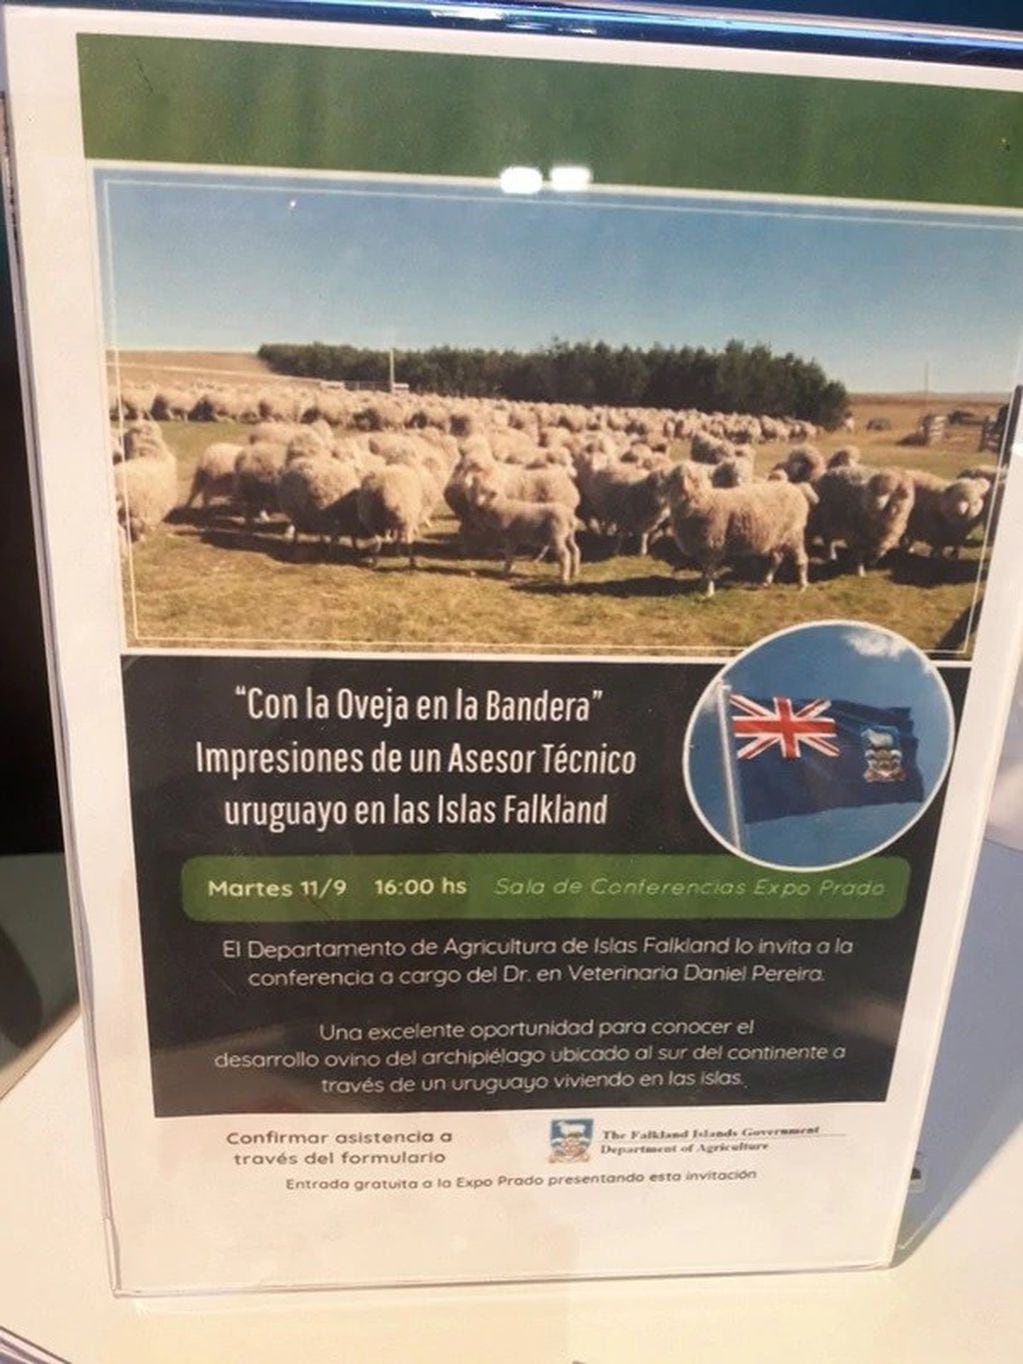 Una exposición en Uruguay exhibe a las Islas Malvinas como "Falkland Islands".